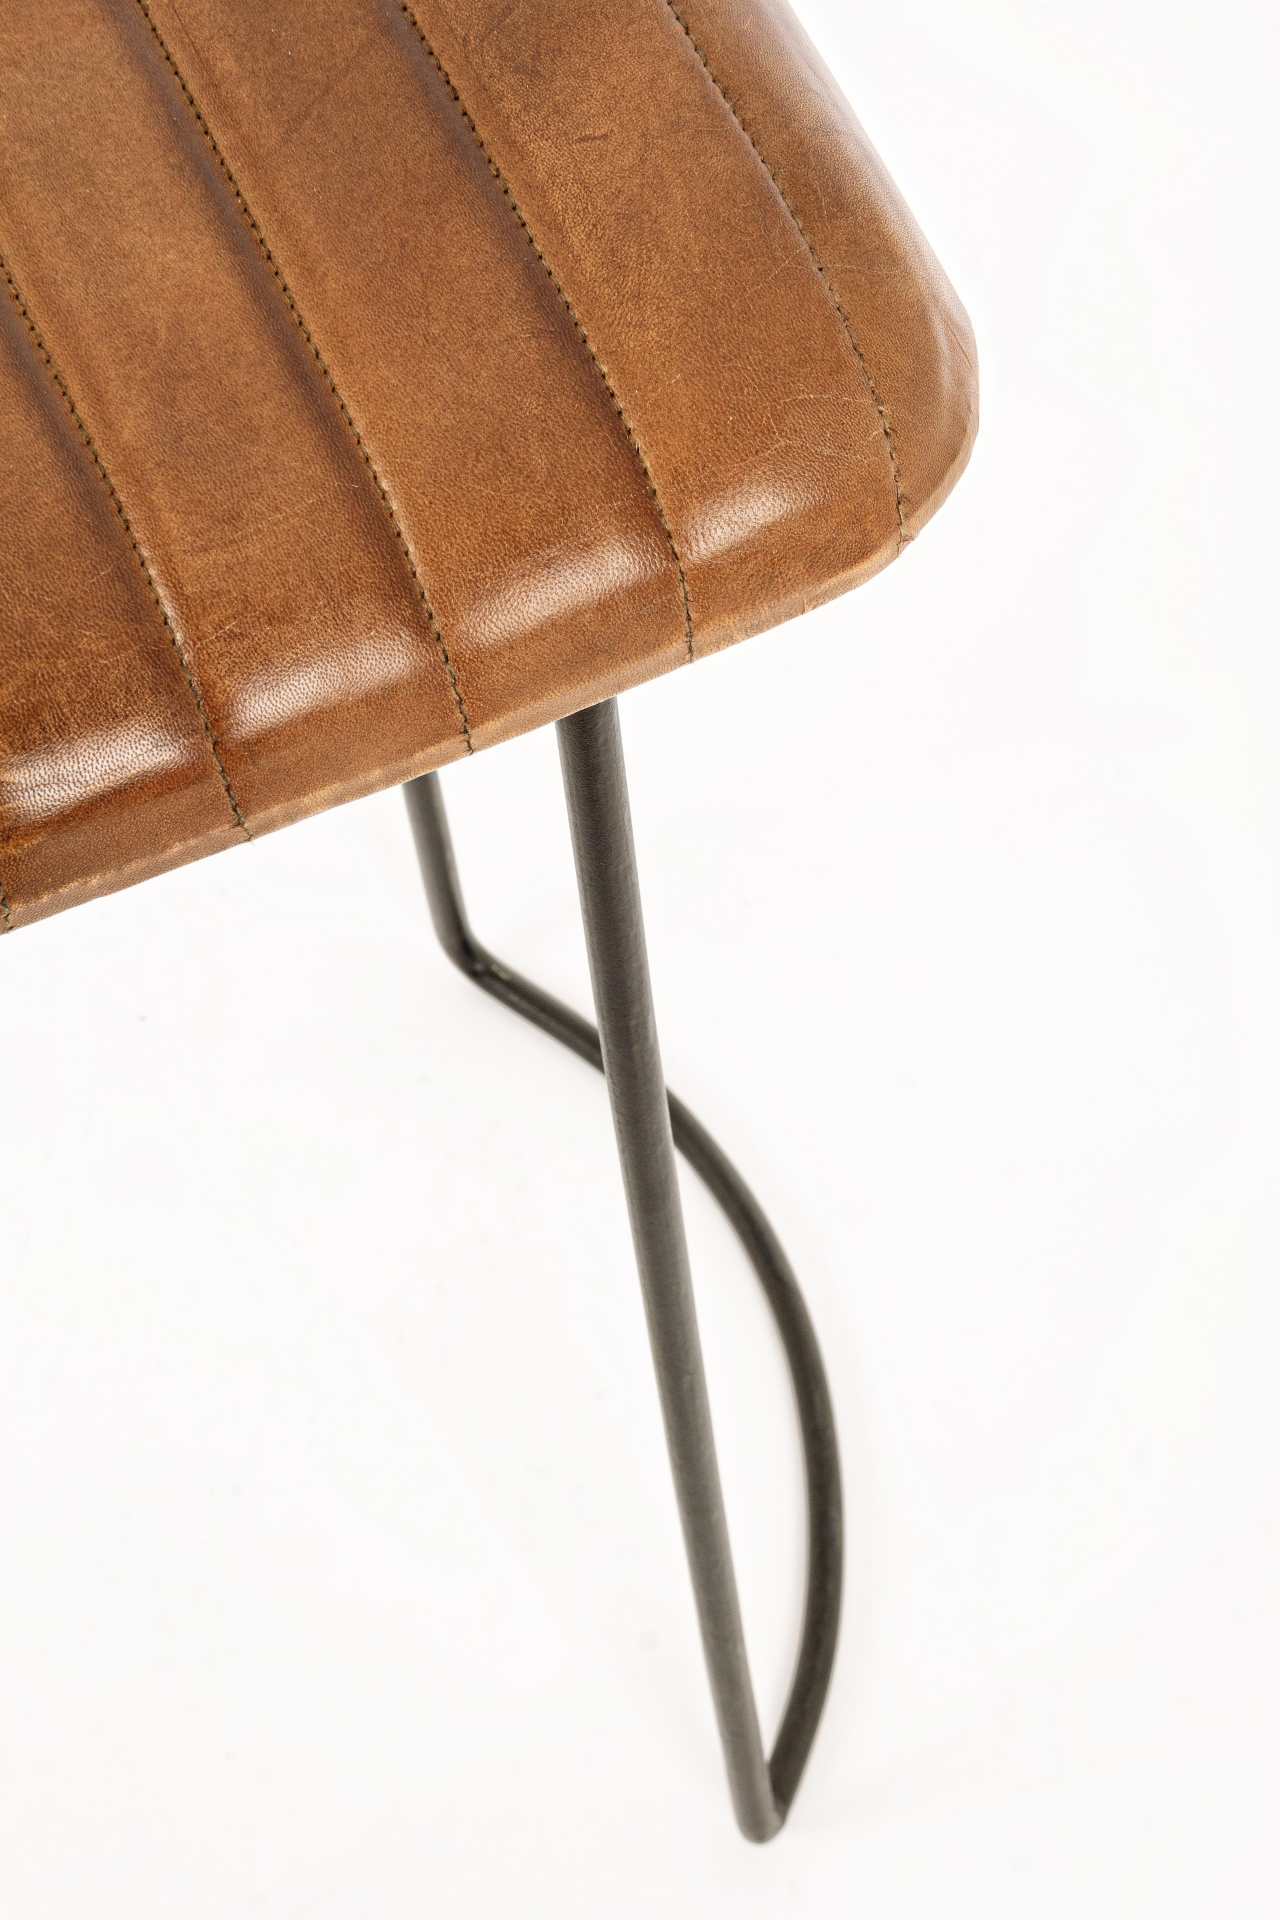 Der Barhocker Nadira überzeugt mit seinem moderndem Design. Gefertigt wurde er aus Leder, welches einen Cognac Farbton besitzt. Das Gestell ist aus Metall und hat eine schwarze Farbe. Die Sitzhöhe des Hockers beträgt 76 cm.